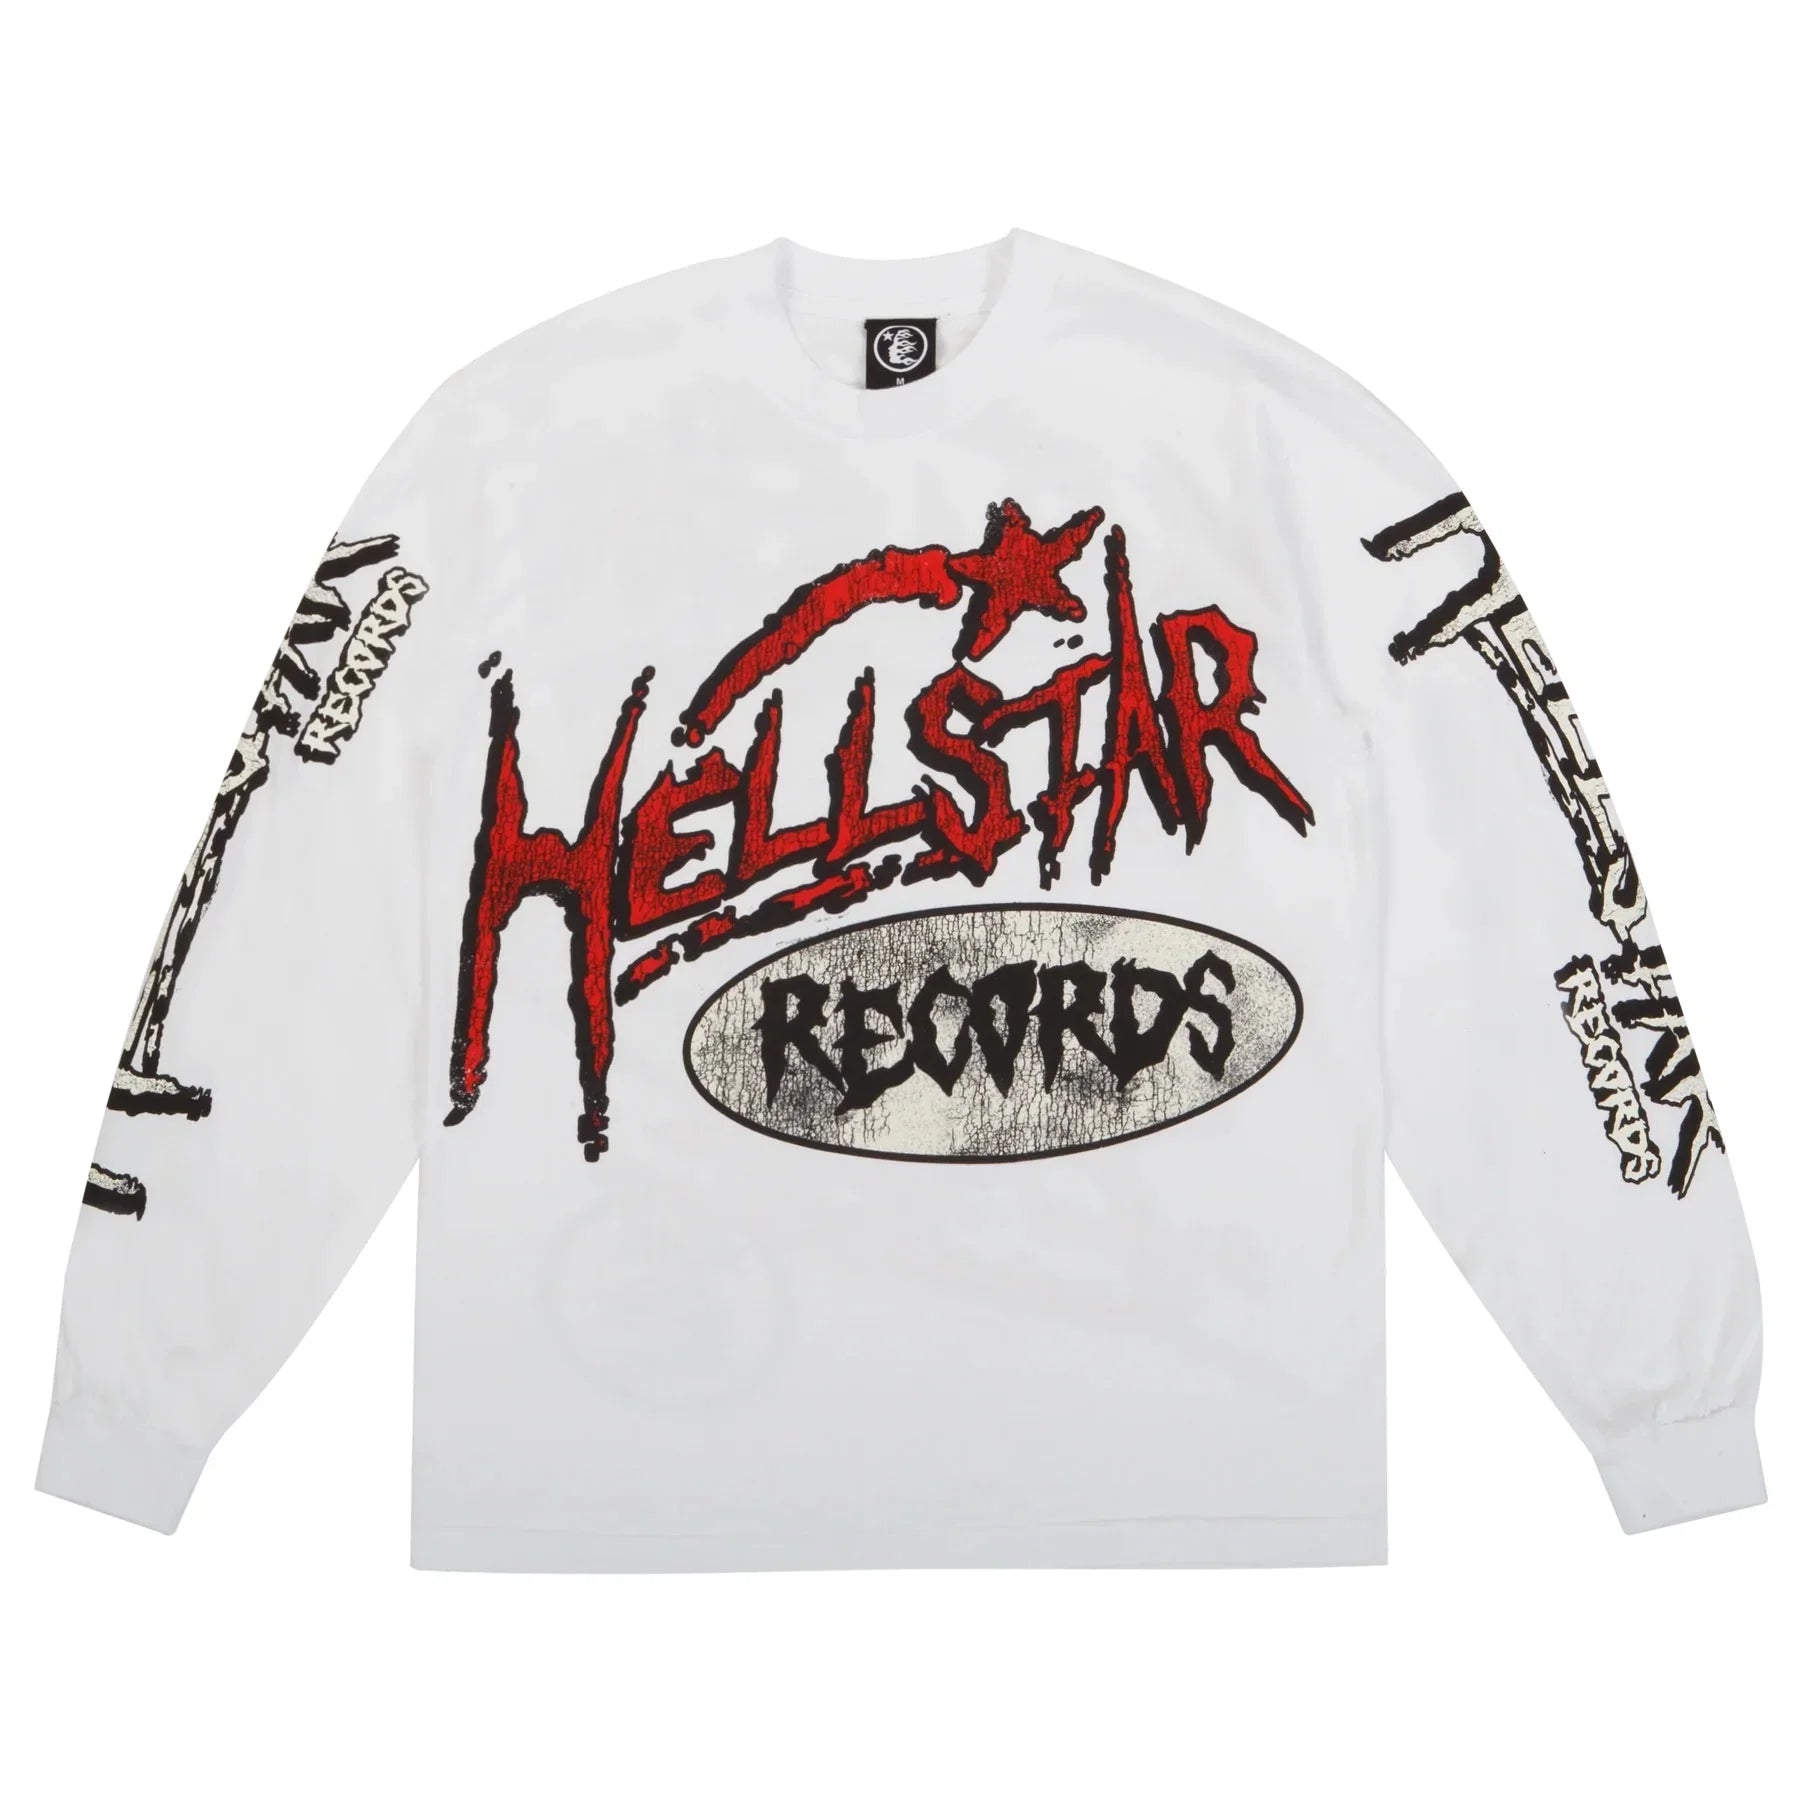 Hellstar Studios Records L/S T-Shirt